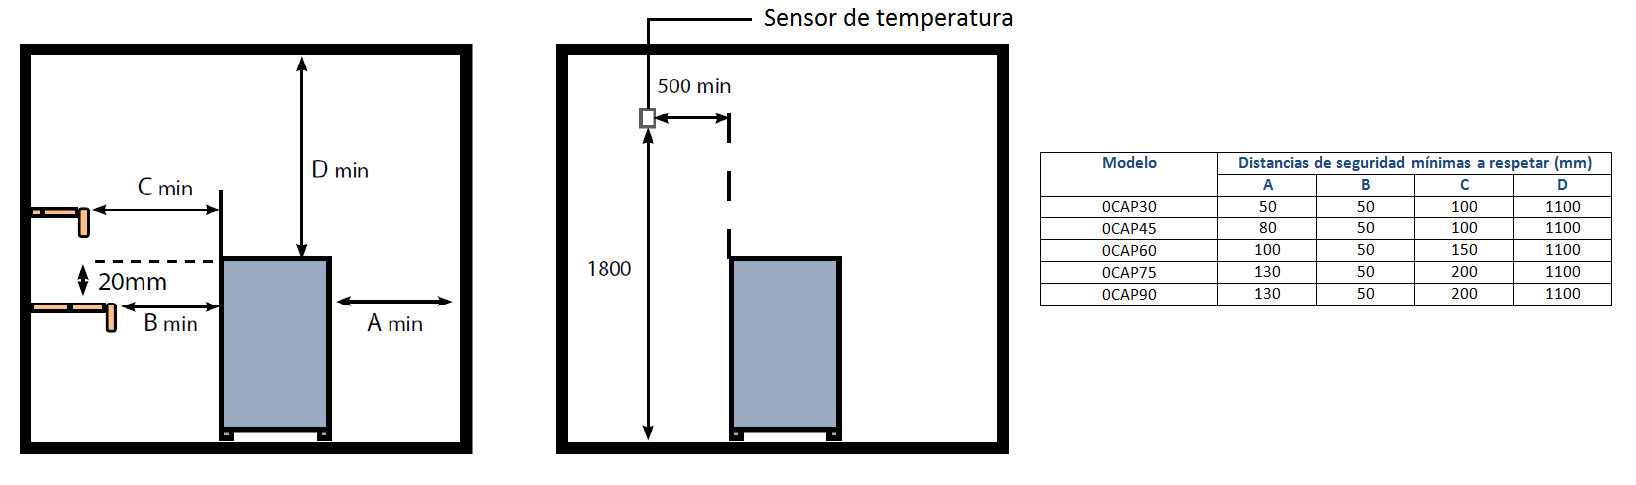 Calentador de sauna Aollo con control OCSB : distancias de seguridad a respetar alrededor de la estufa - Oceanic Saunas